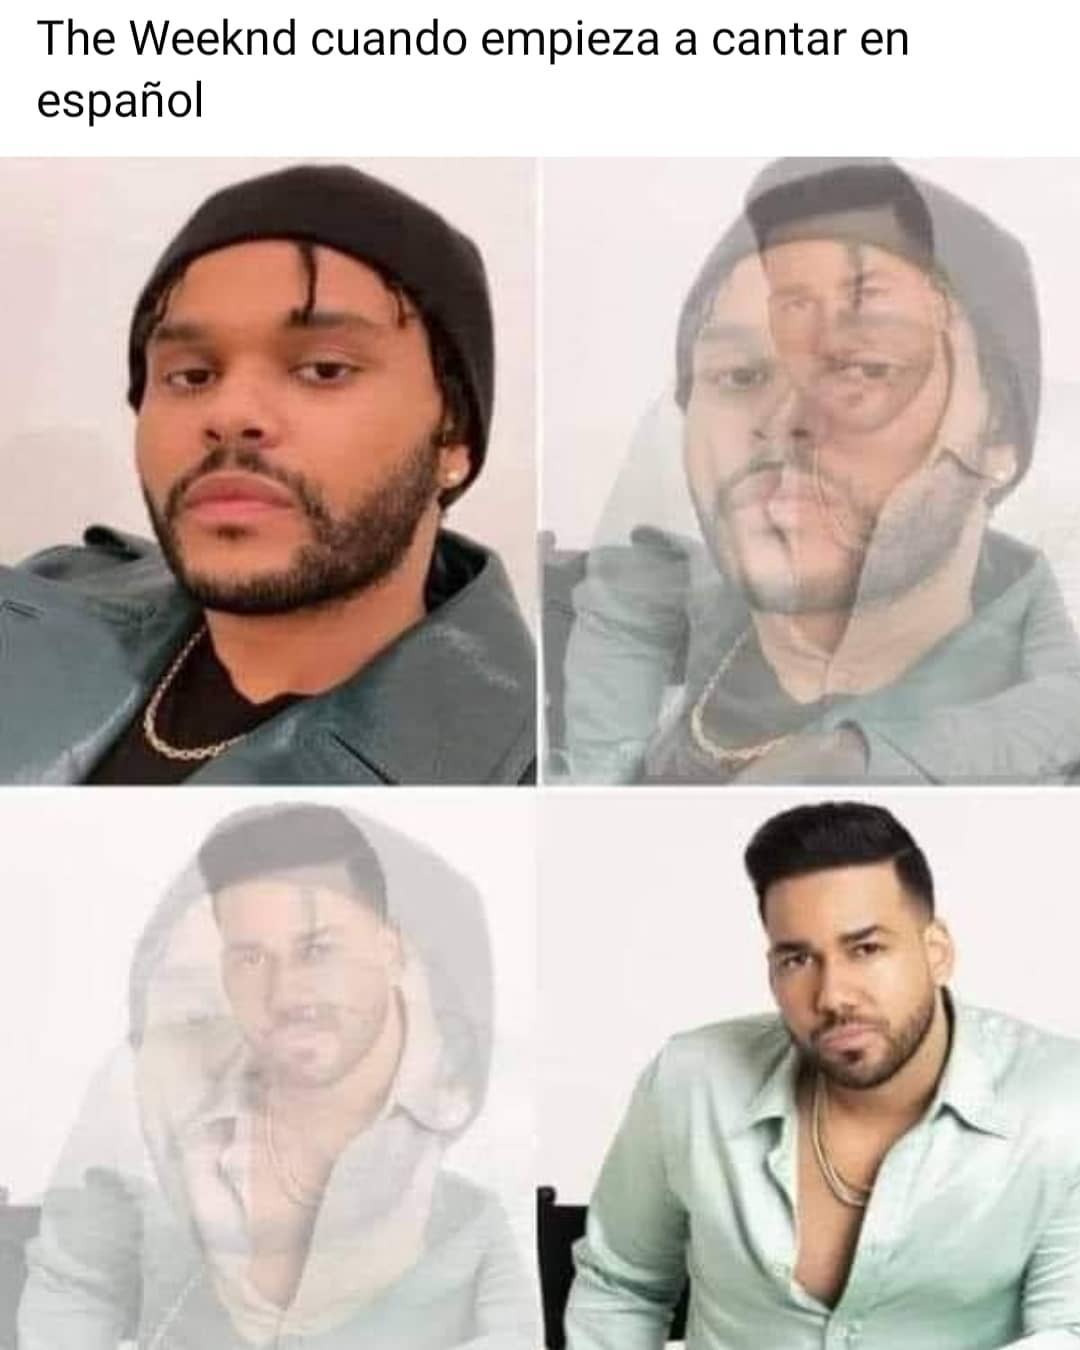 The Weeknd cuando empieza a cantar en español.